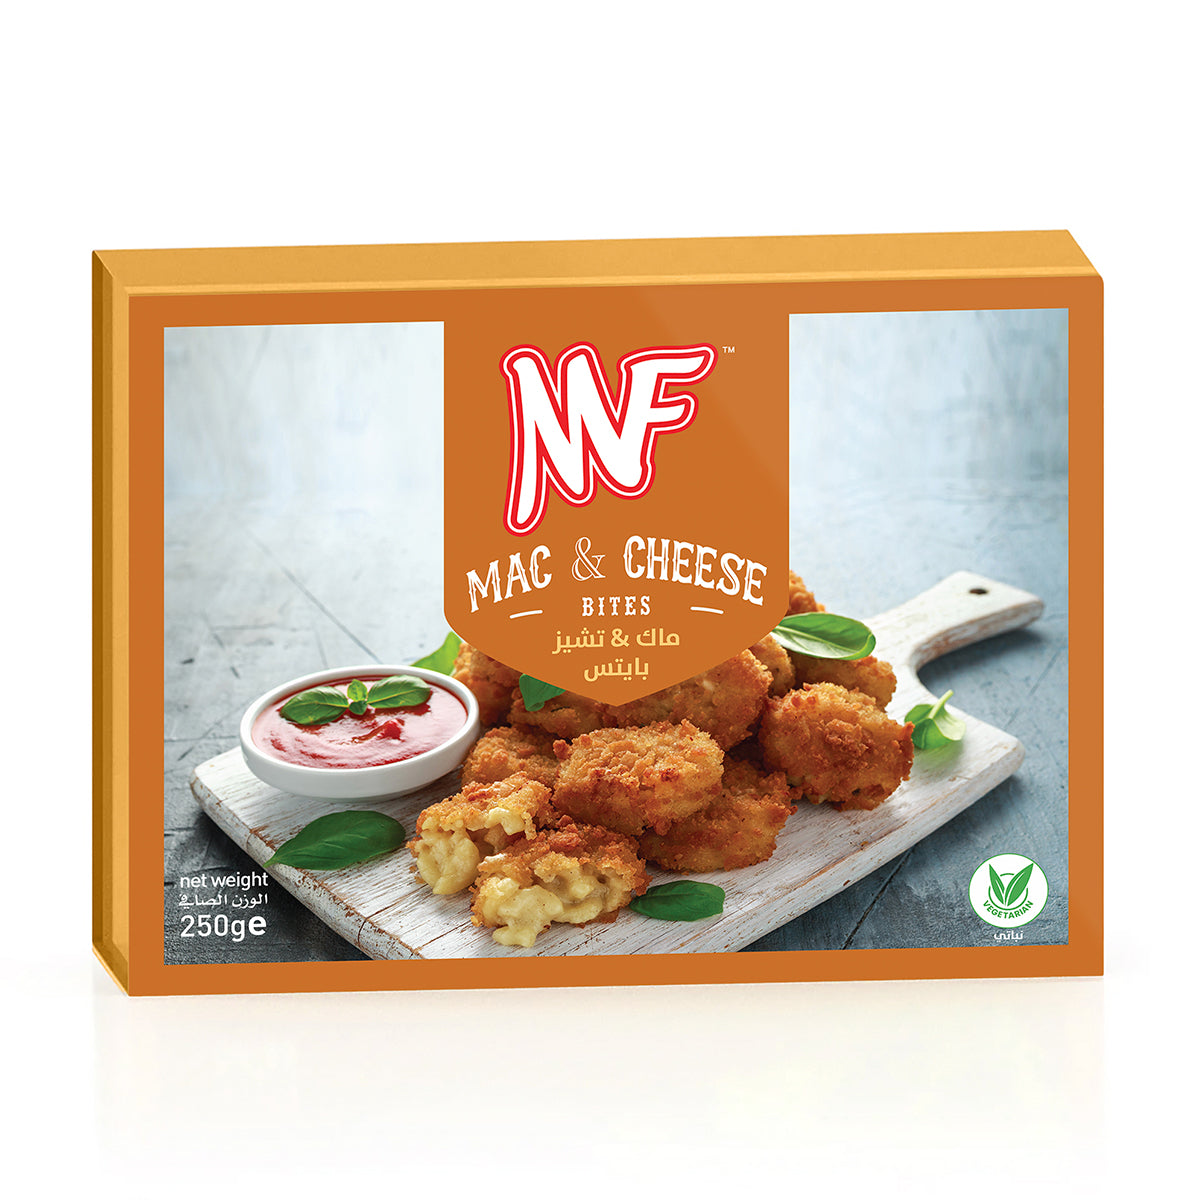 MF Mac & Cheese Bites 250g